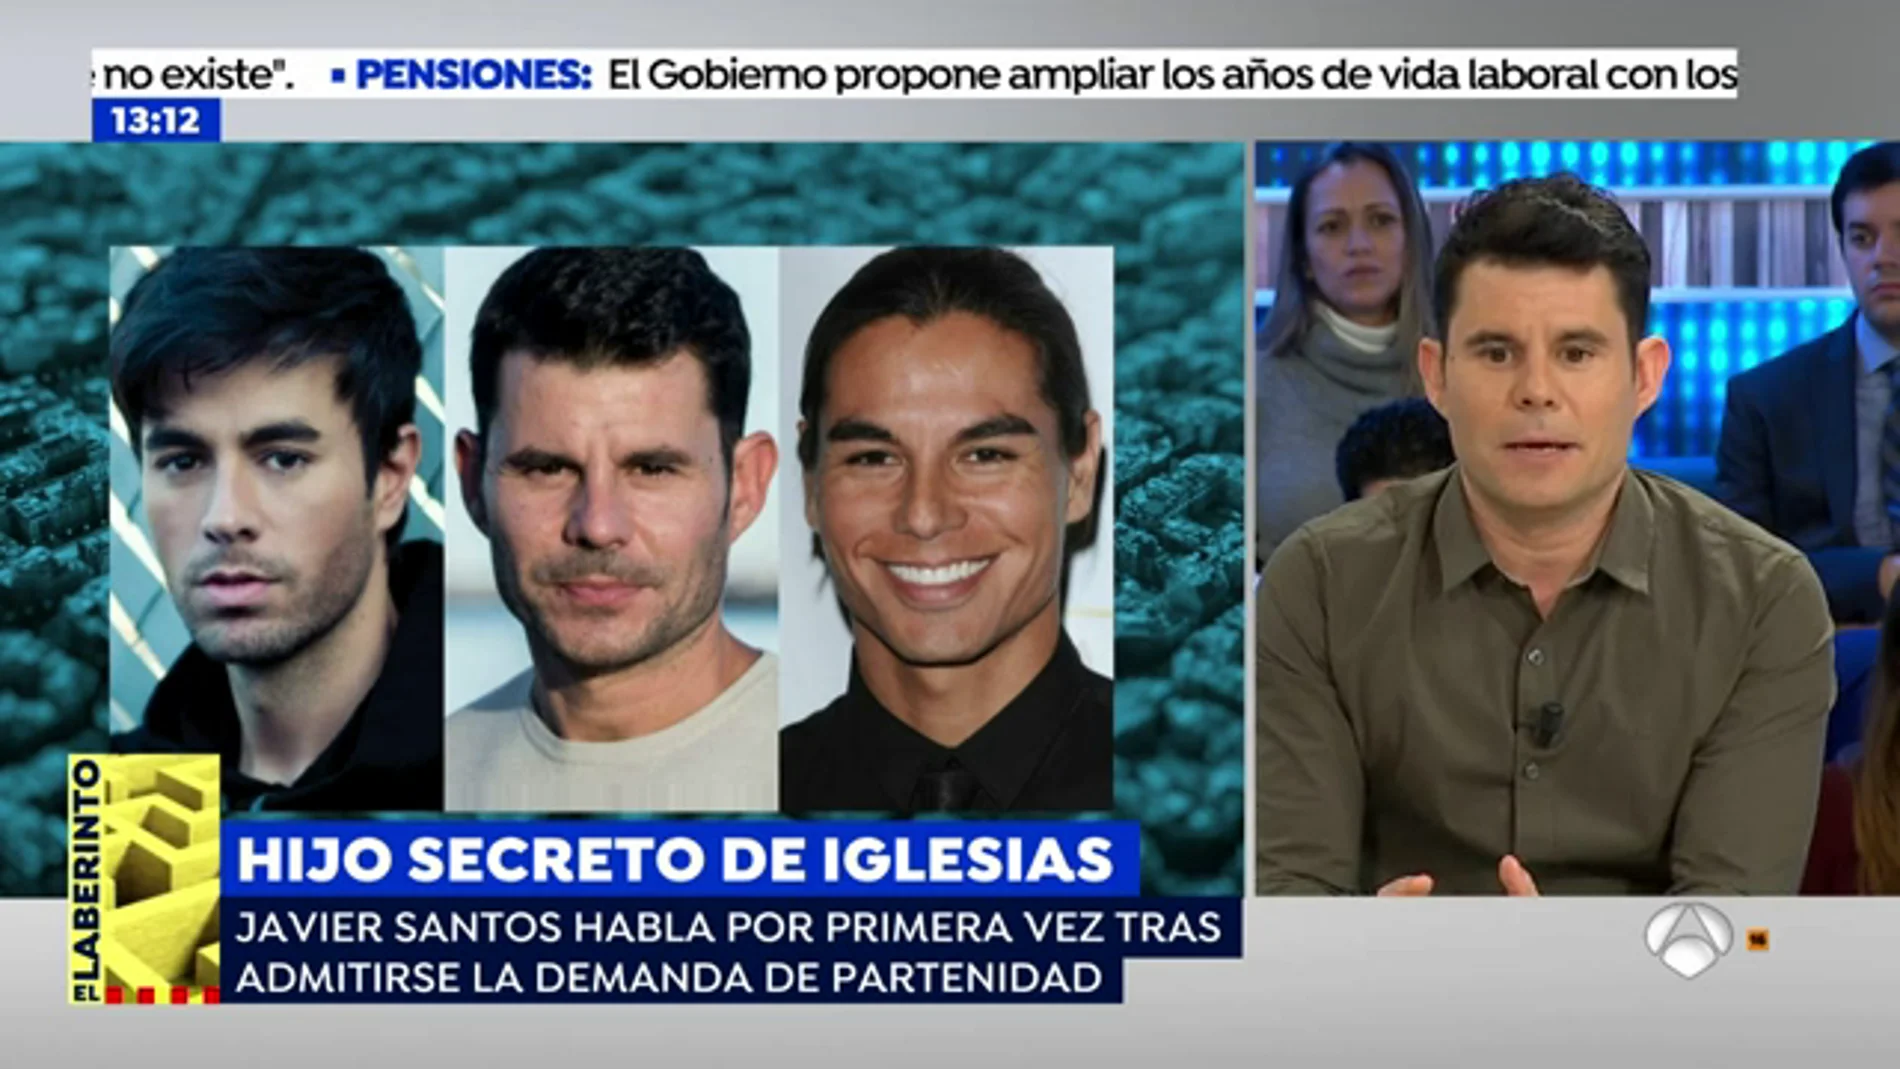 Javier Santos, el supuesto hijo secreto de Julio Iglesias: "Cuando supe que era mi padre no era consciente del impacto mediático"